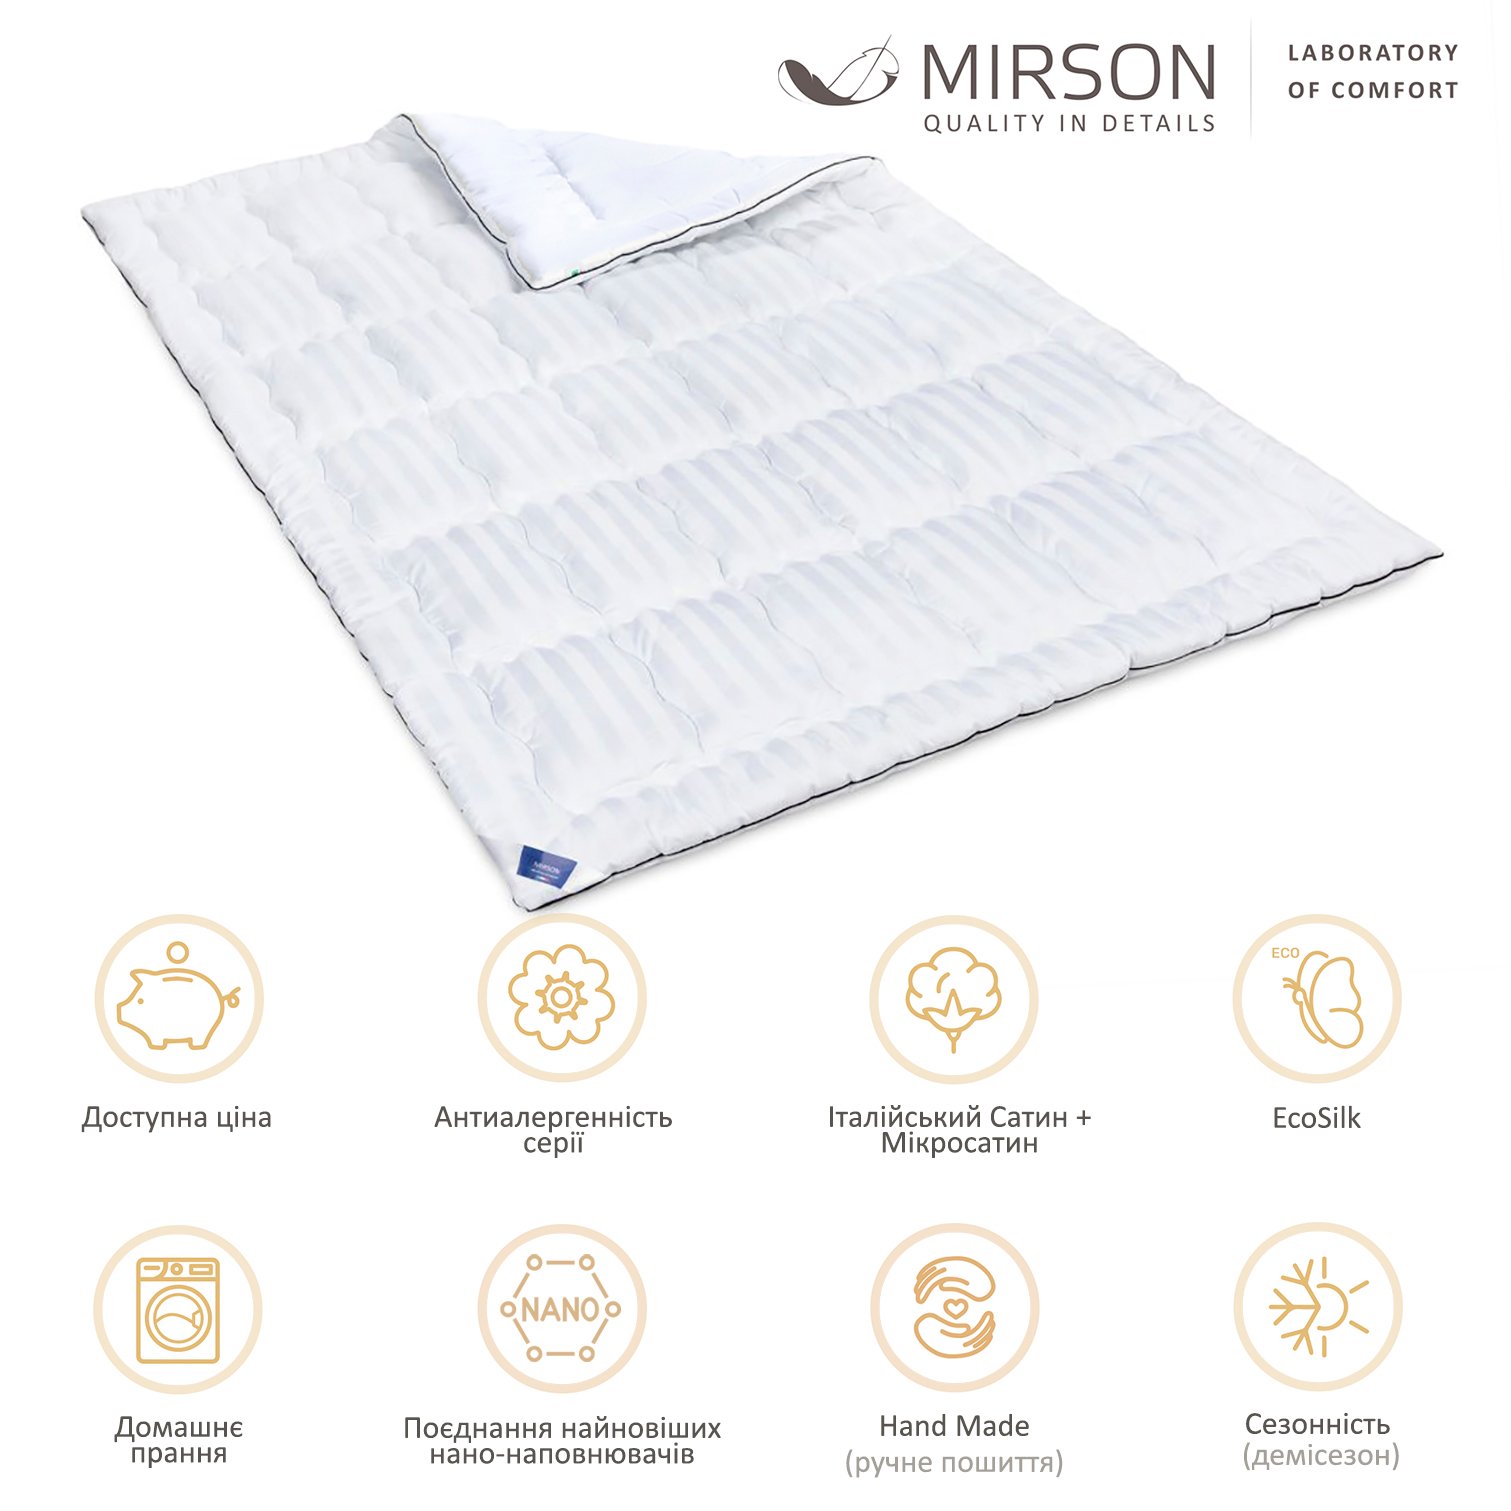 Одеяло антиаллергенное MirSon Royal Pearl Hand Made EcoSilk №0553, демисезонное, 110x140 см, белое - фото 5